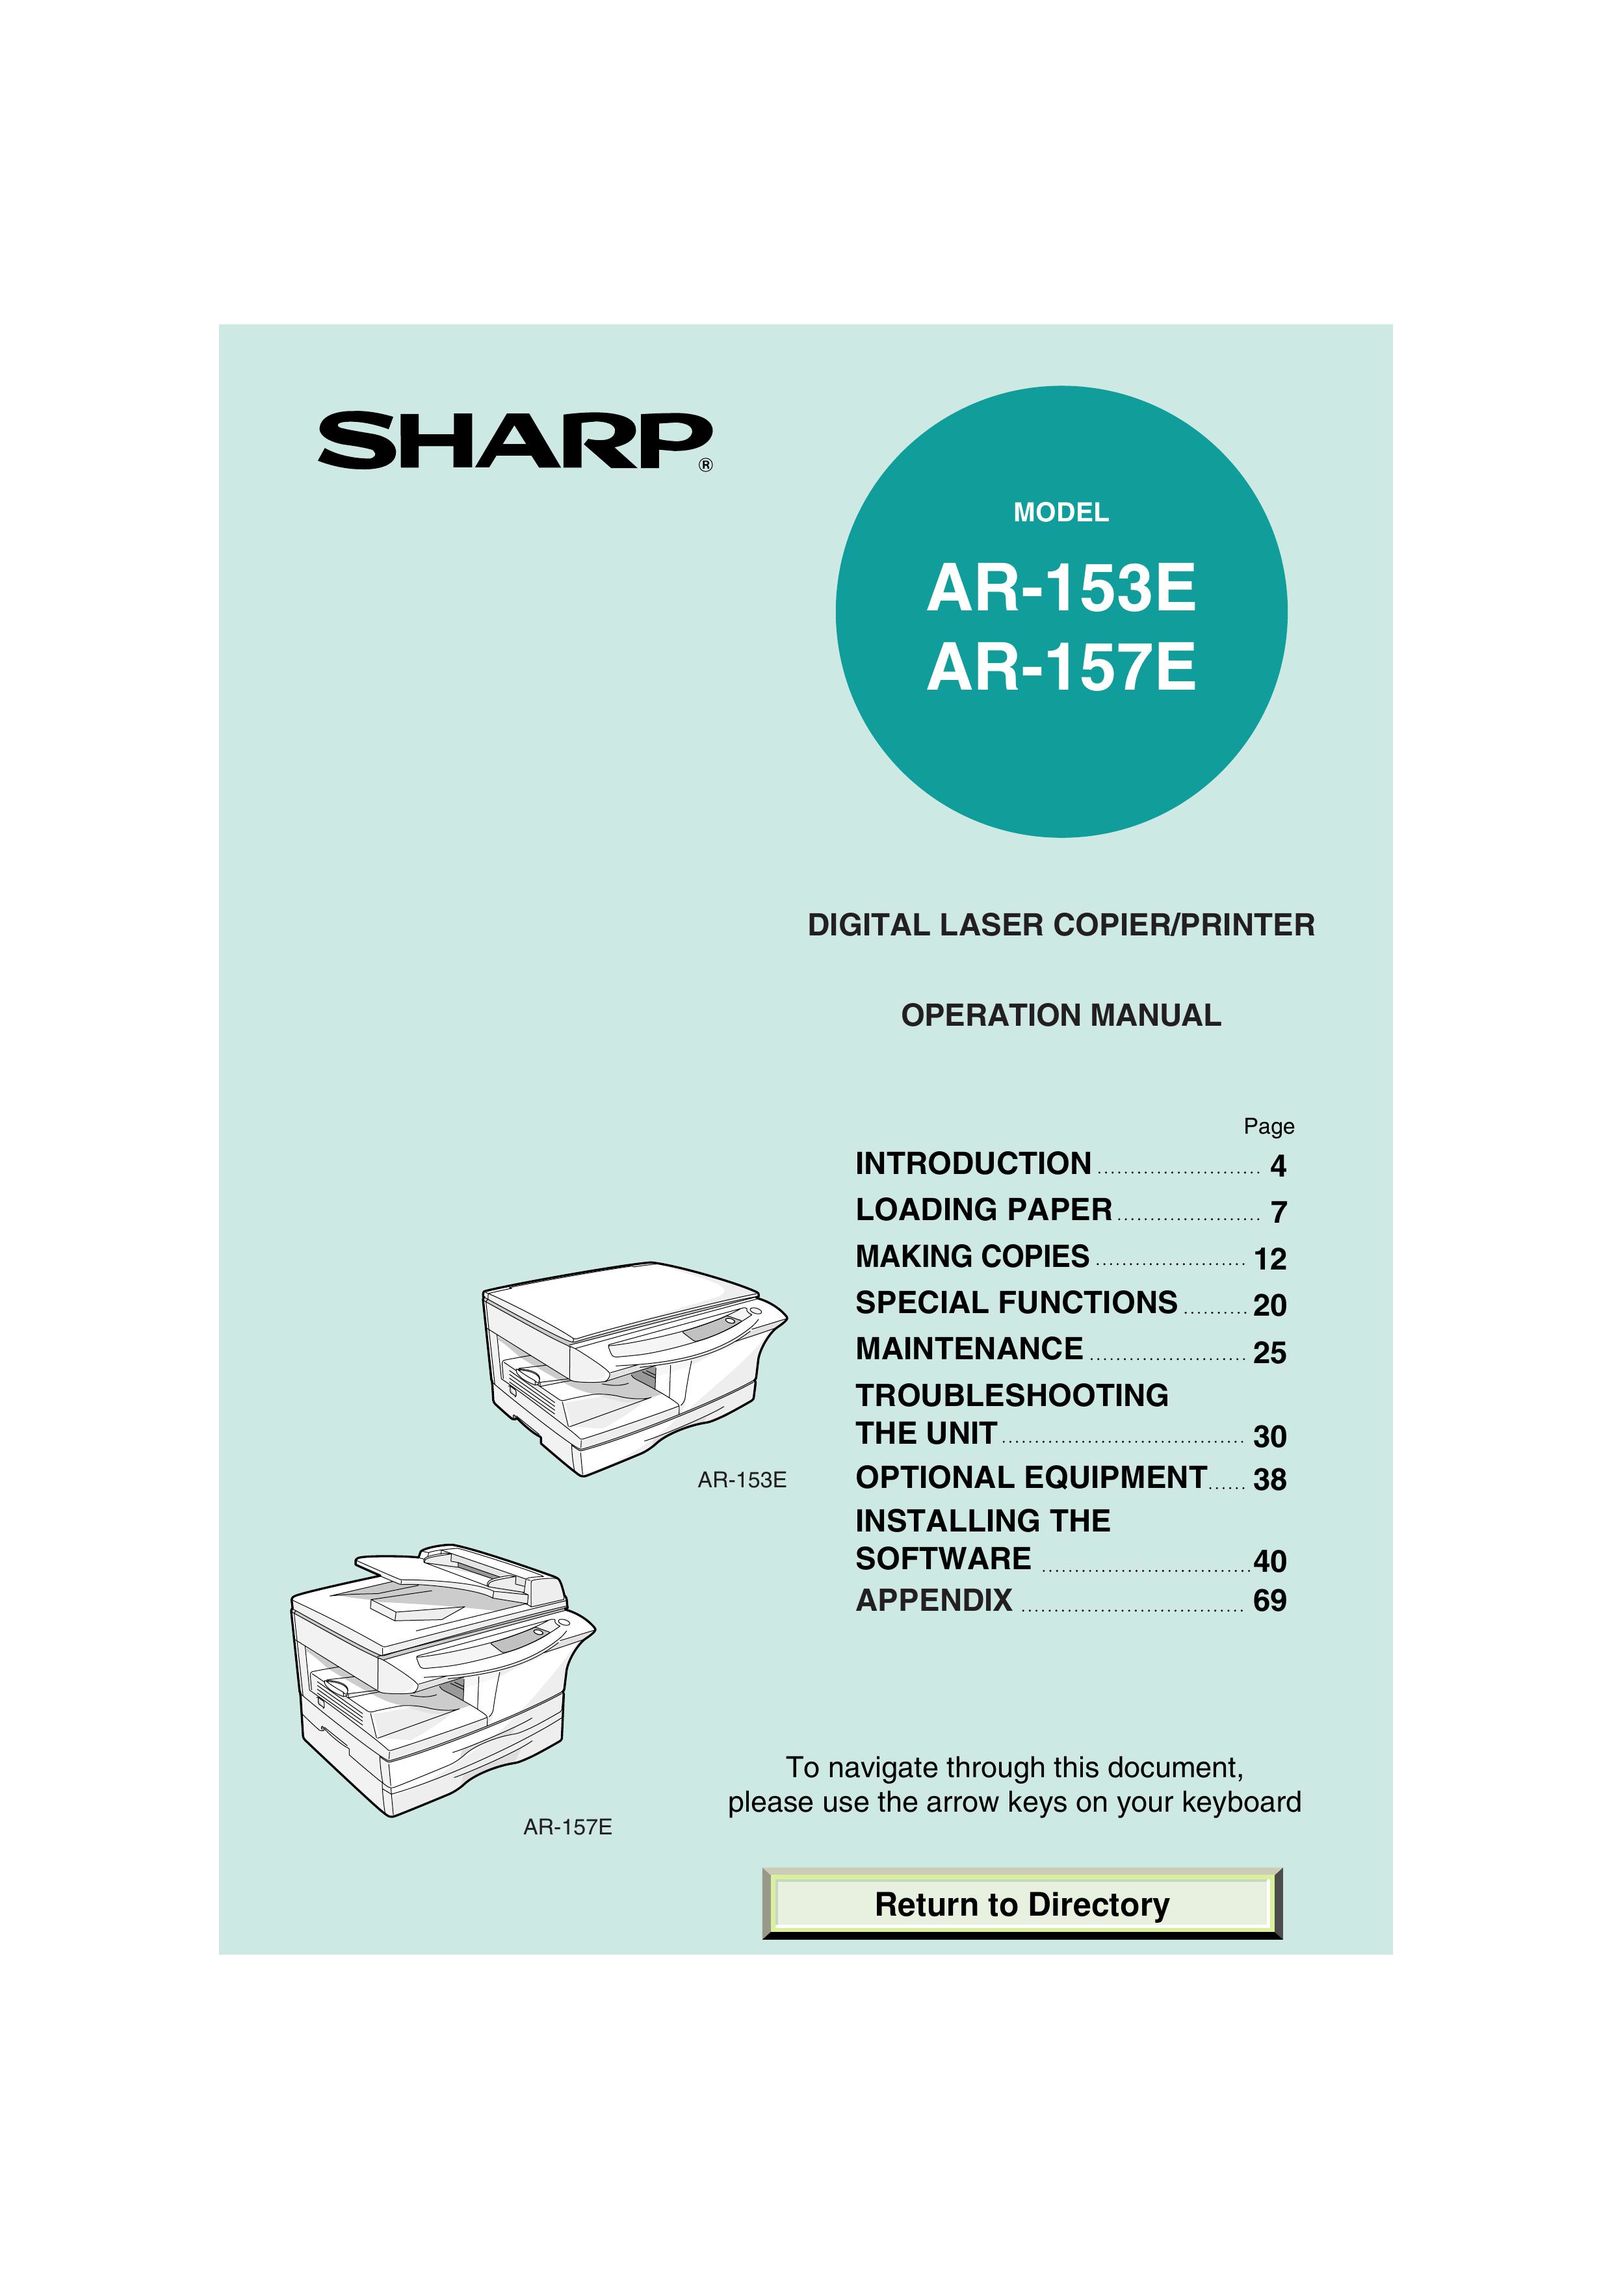 Sharp AR-157E Printer User Manual